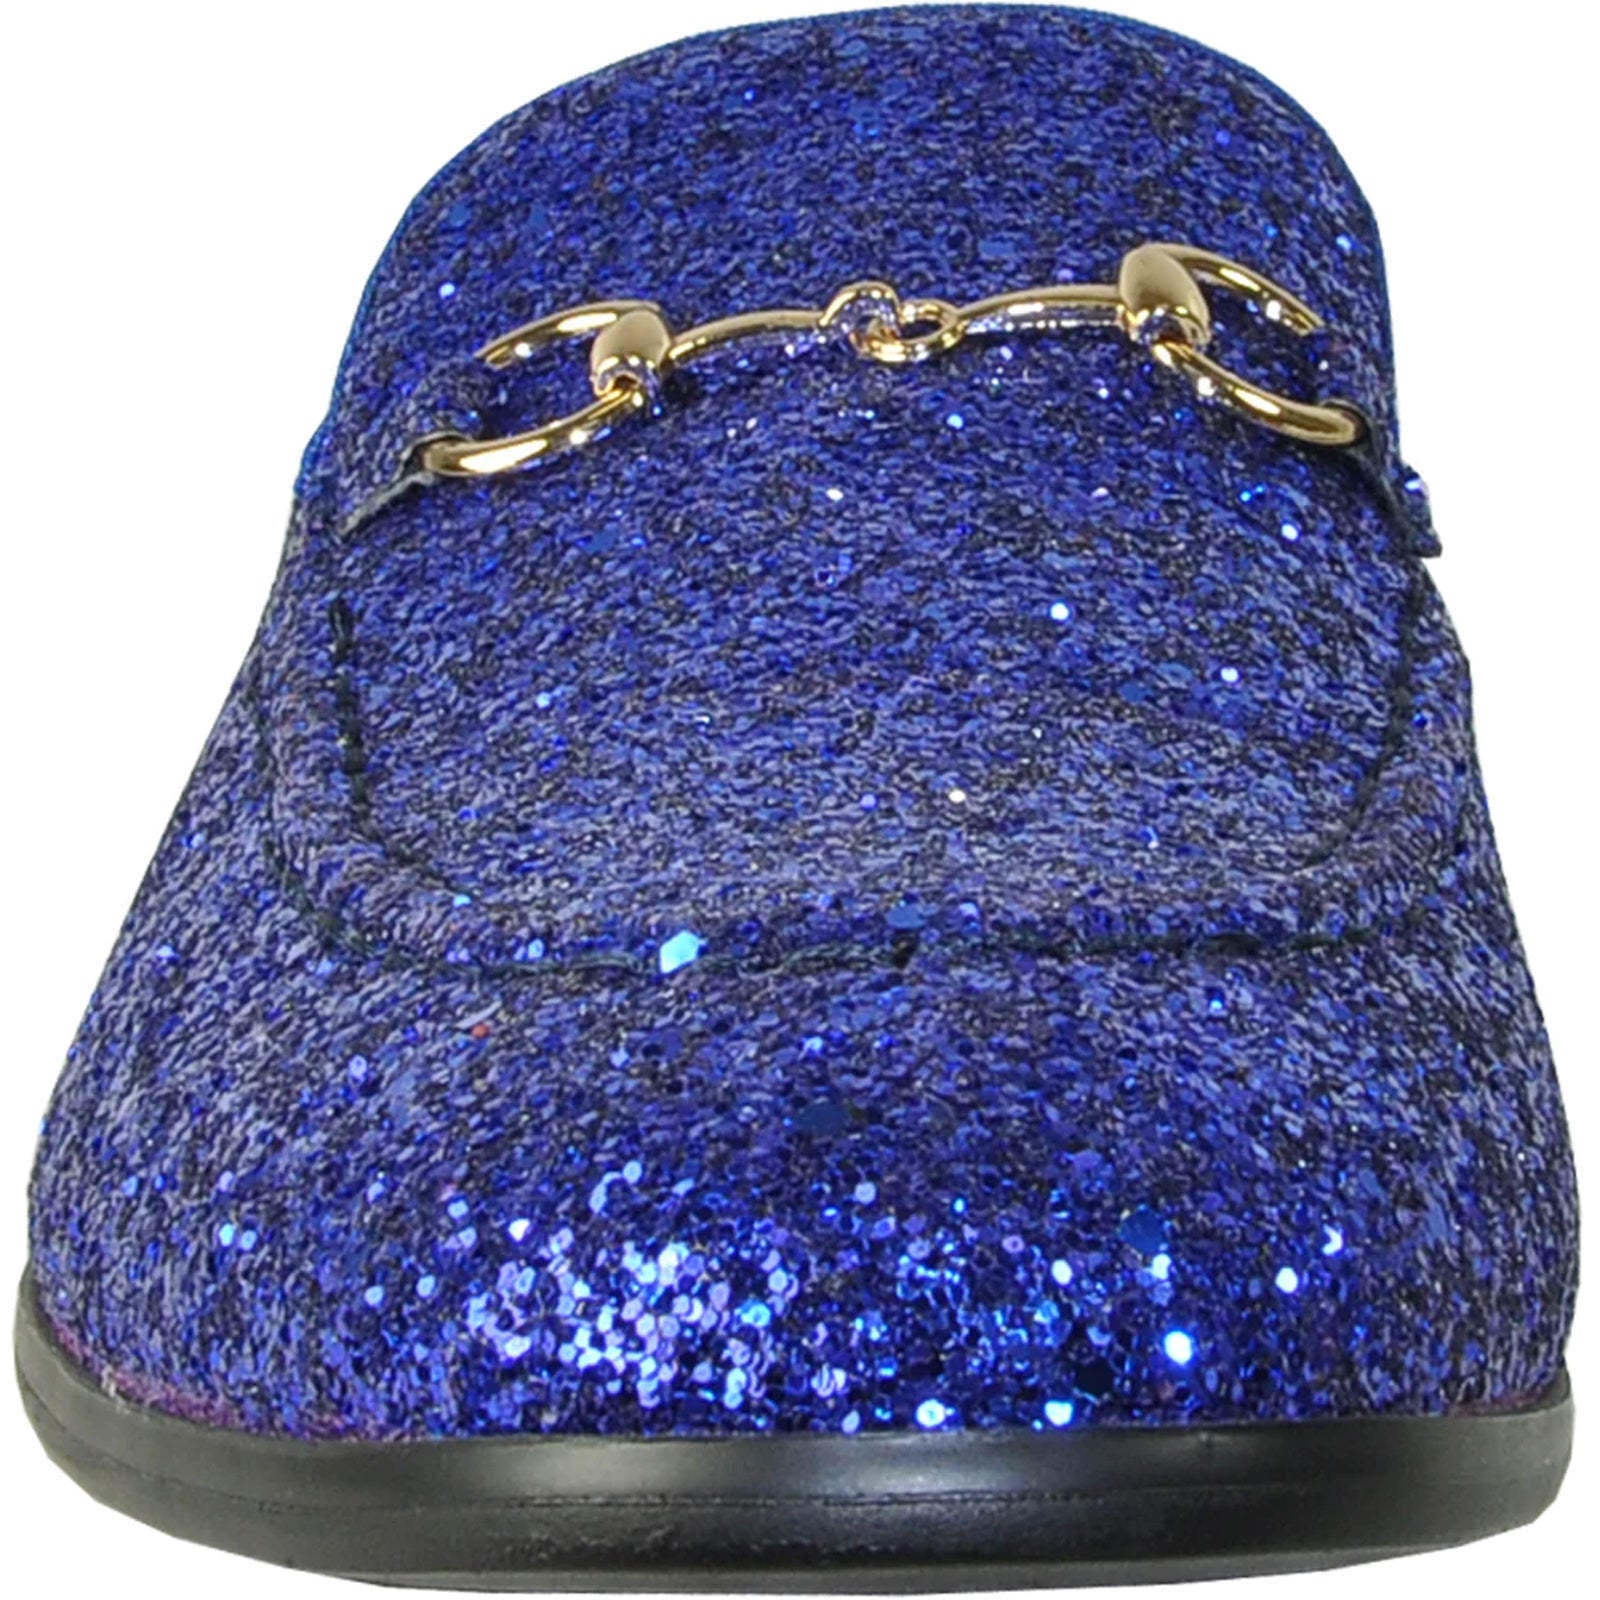 "Royal Blue Glitter Sequin Men's Prom Tuxedo Loafer - Modern Style"